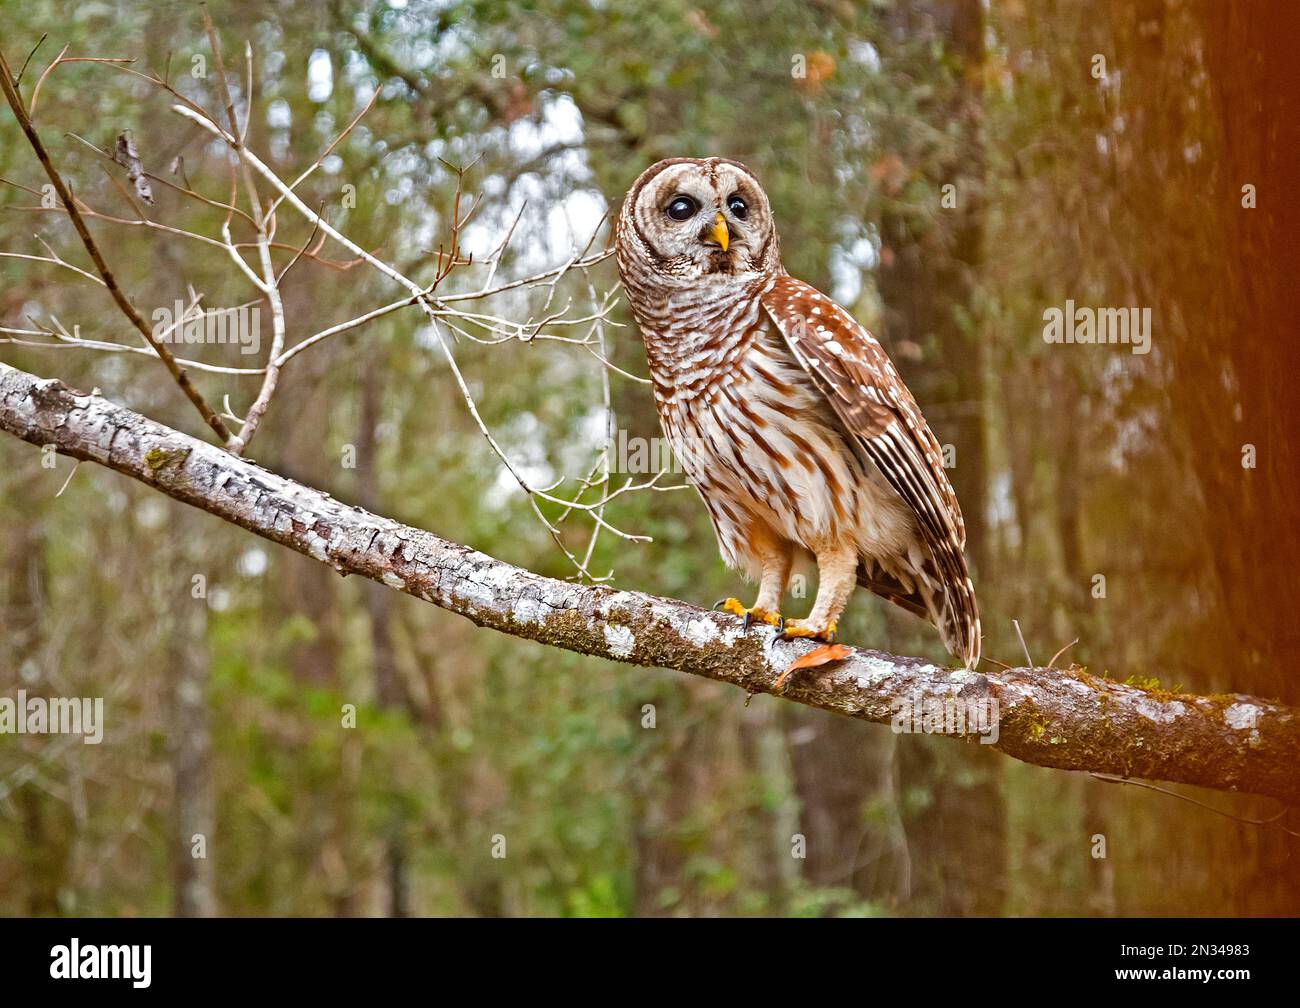 Die Eulen Barred Owls oder Strix varia sind auch bekannt, da Hoot Owls relativ groß sind, meist nachtaktive Eulen, die fast alles aus Fleisch fressen Stockfoto